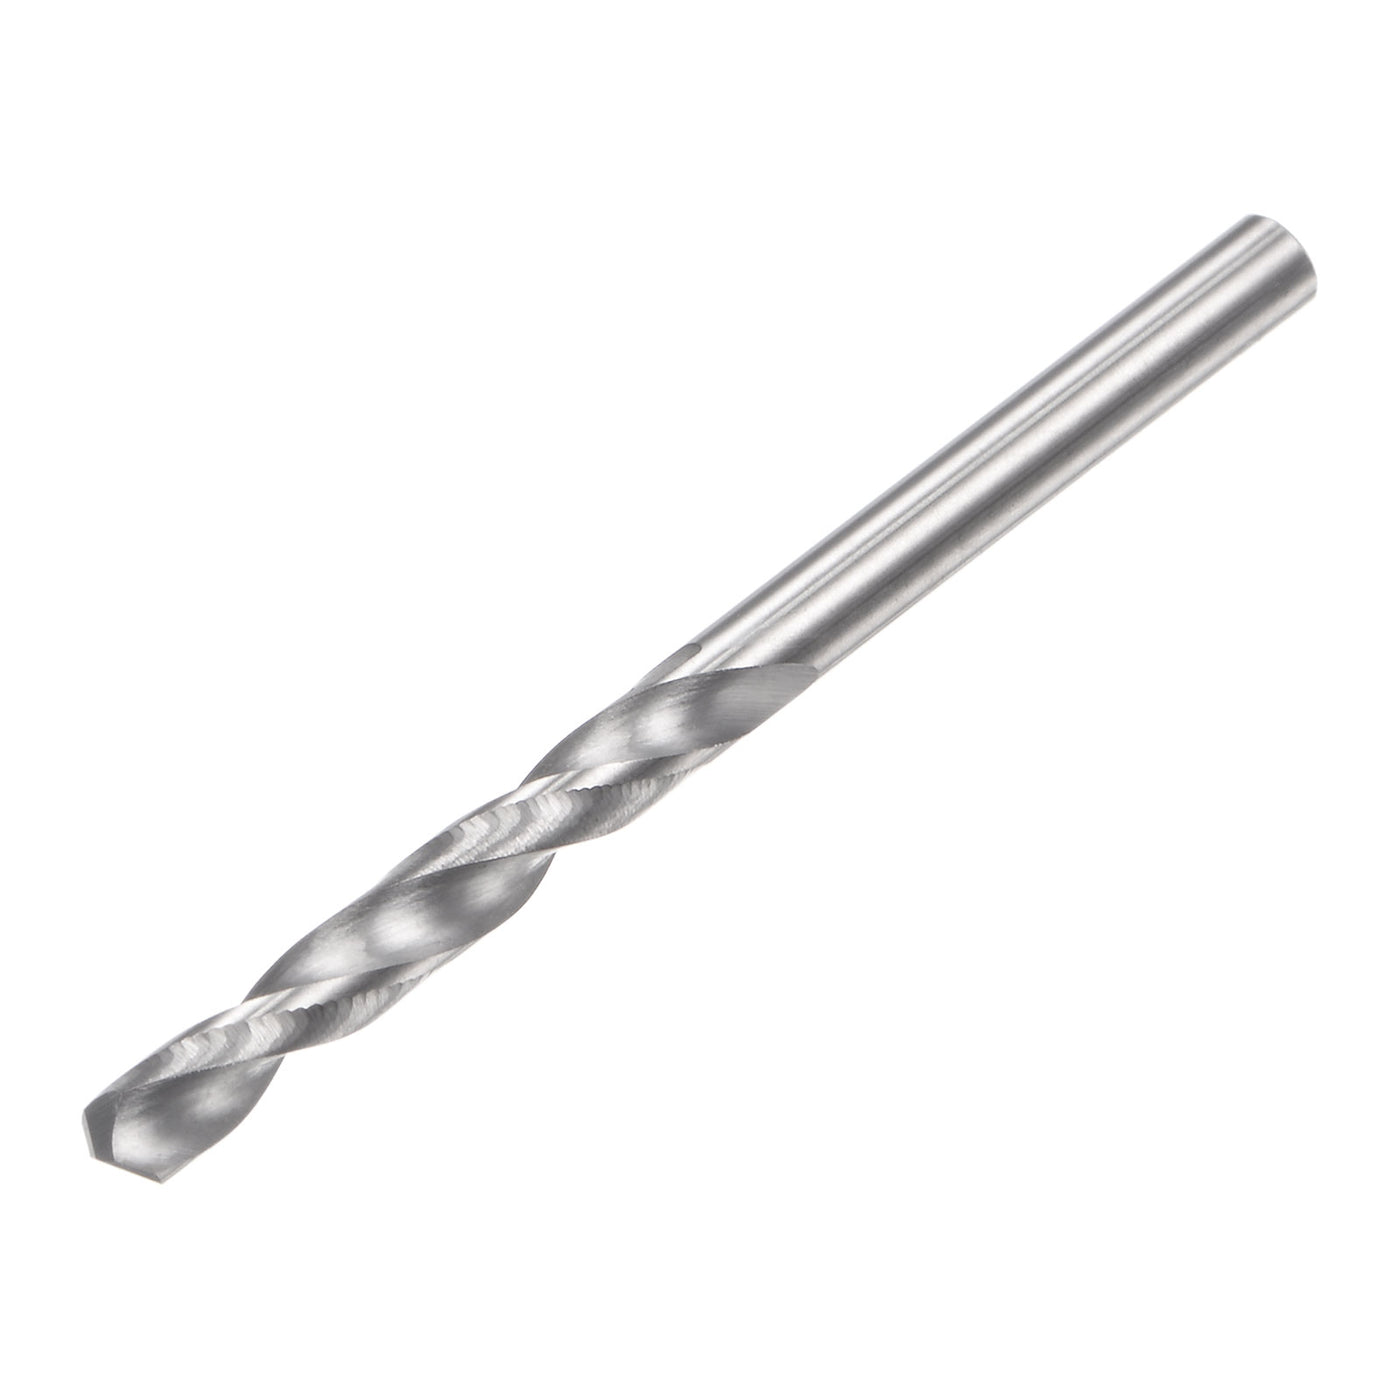 uxcell Uxcell 2.7mm C2/K20 Tungsten Carbide Straight Shank Spiral Flutes Twist Drill Bit